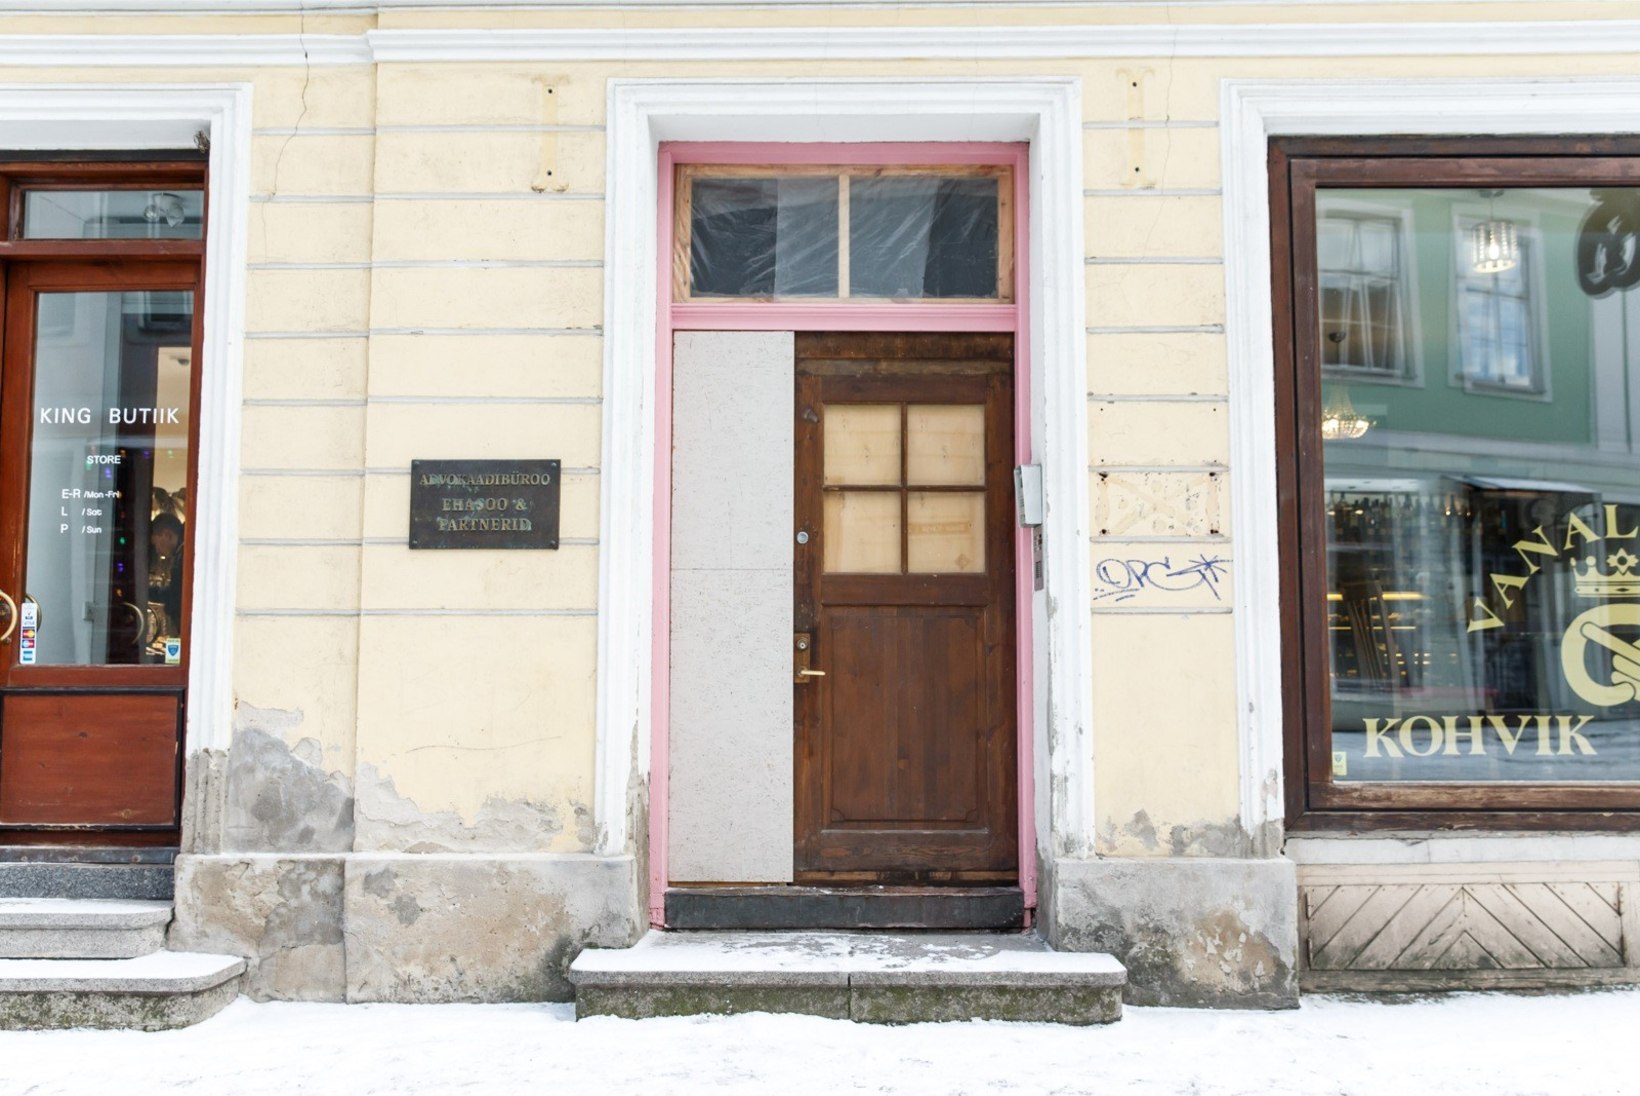 Hanna-Liina Võsa sai roosa ukse taastamise eest pea 2000-eurose arve: see tundub utoopiliselt suur!